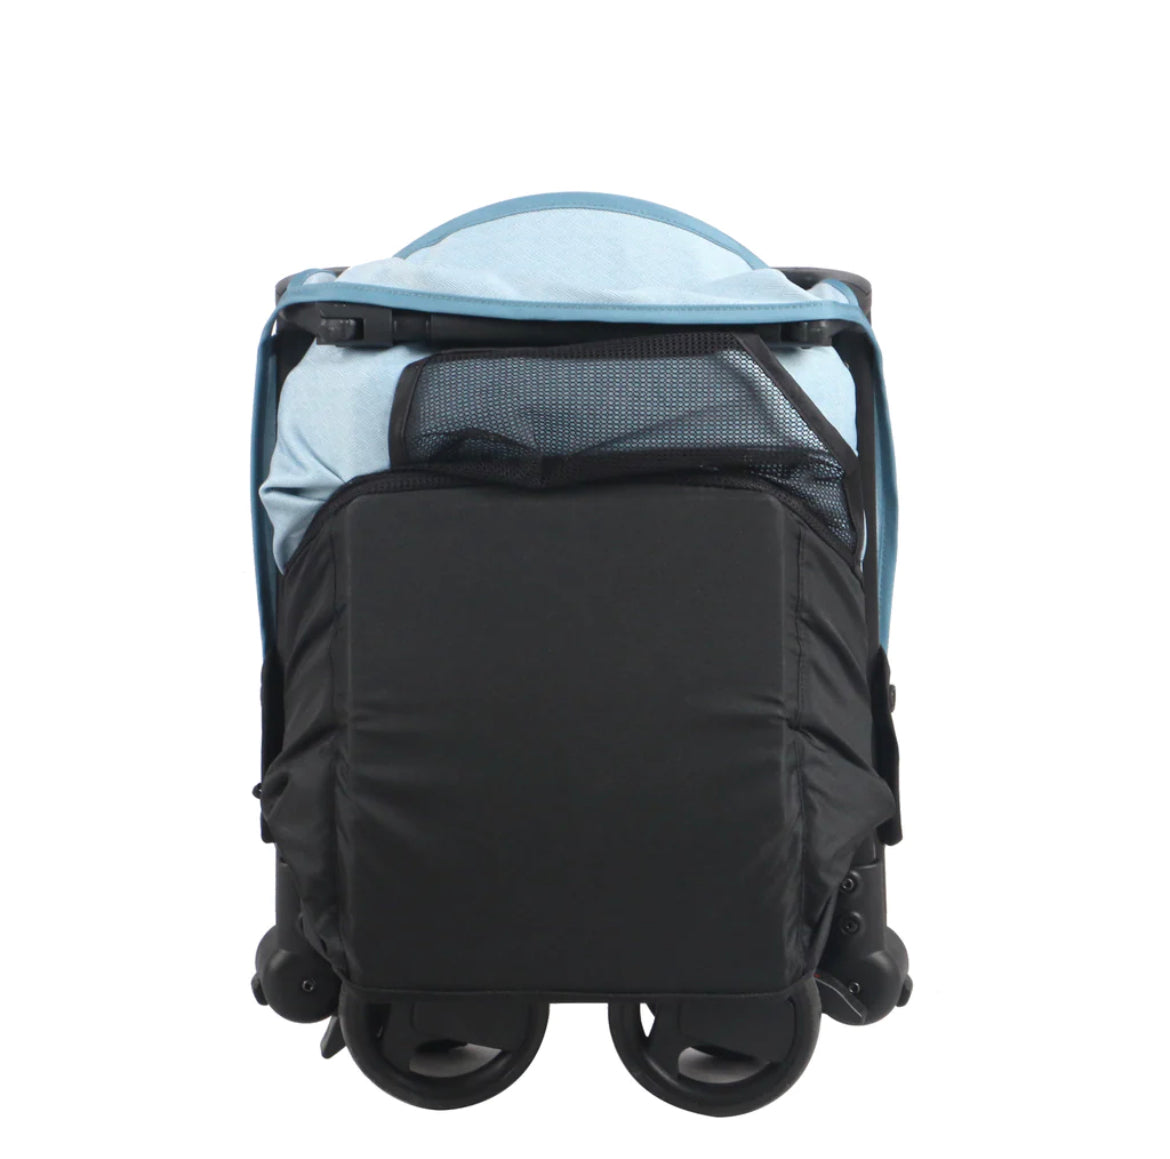 MBX5 Billie Faiers Blue Ultra Compact Stroller